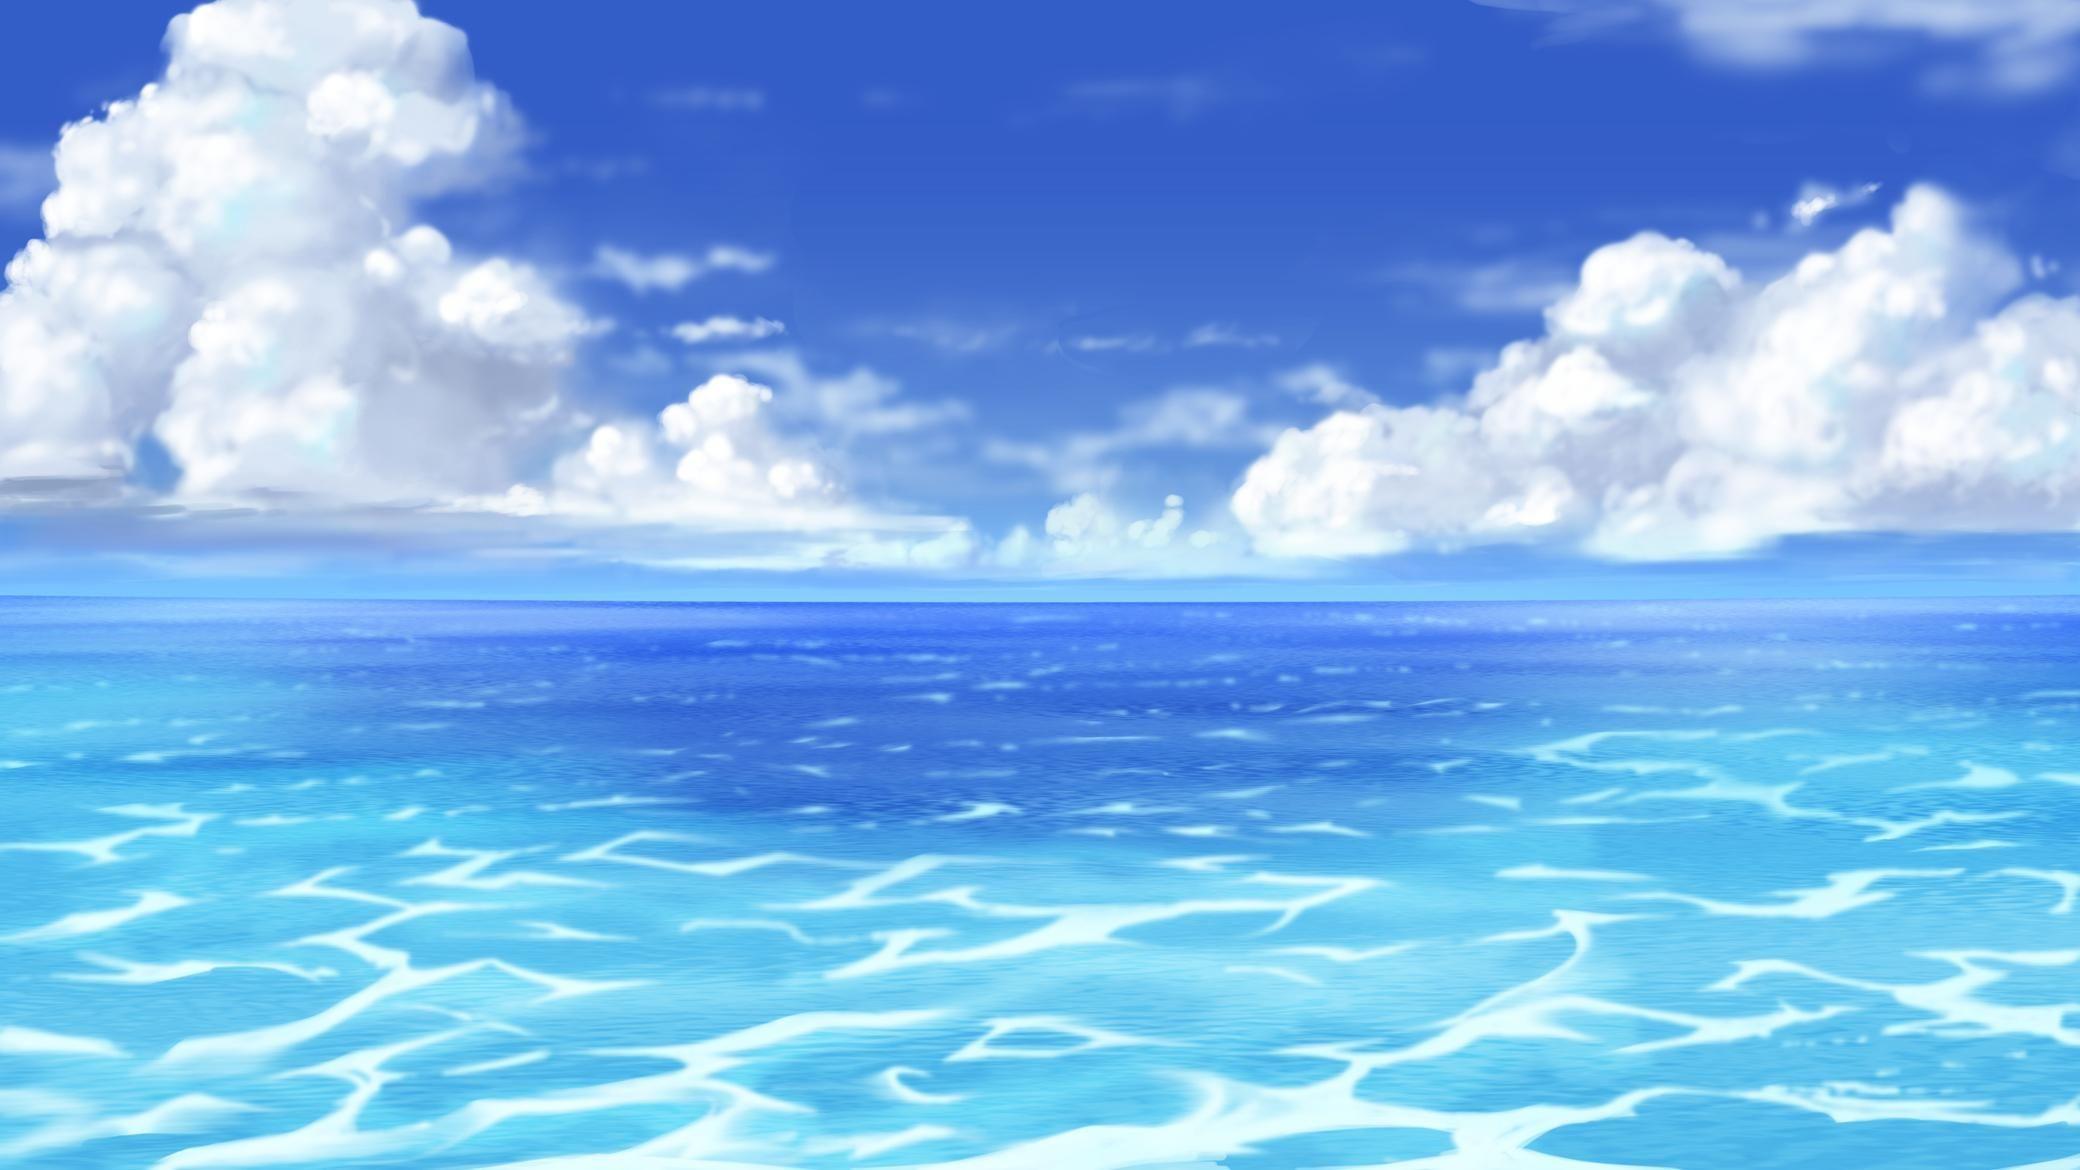 Thông qua bức ảnh nền đại dương của anime, bạn sẽ được tận hưởng không khí mát mẻ của biển khơi, cảm nhận niềm vui trong lòng khi đắm mình với những hình ảnh của những sinh vật biển độc đáo. Tận hưởng mạnh mẽ nét đẹp của đại dương ngay hôm nay.